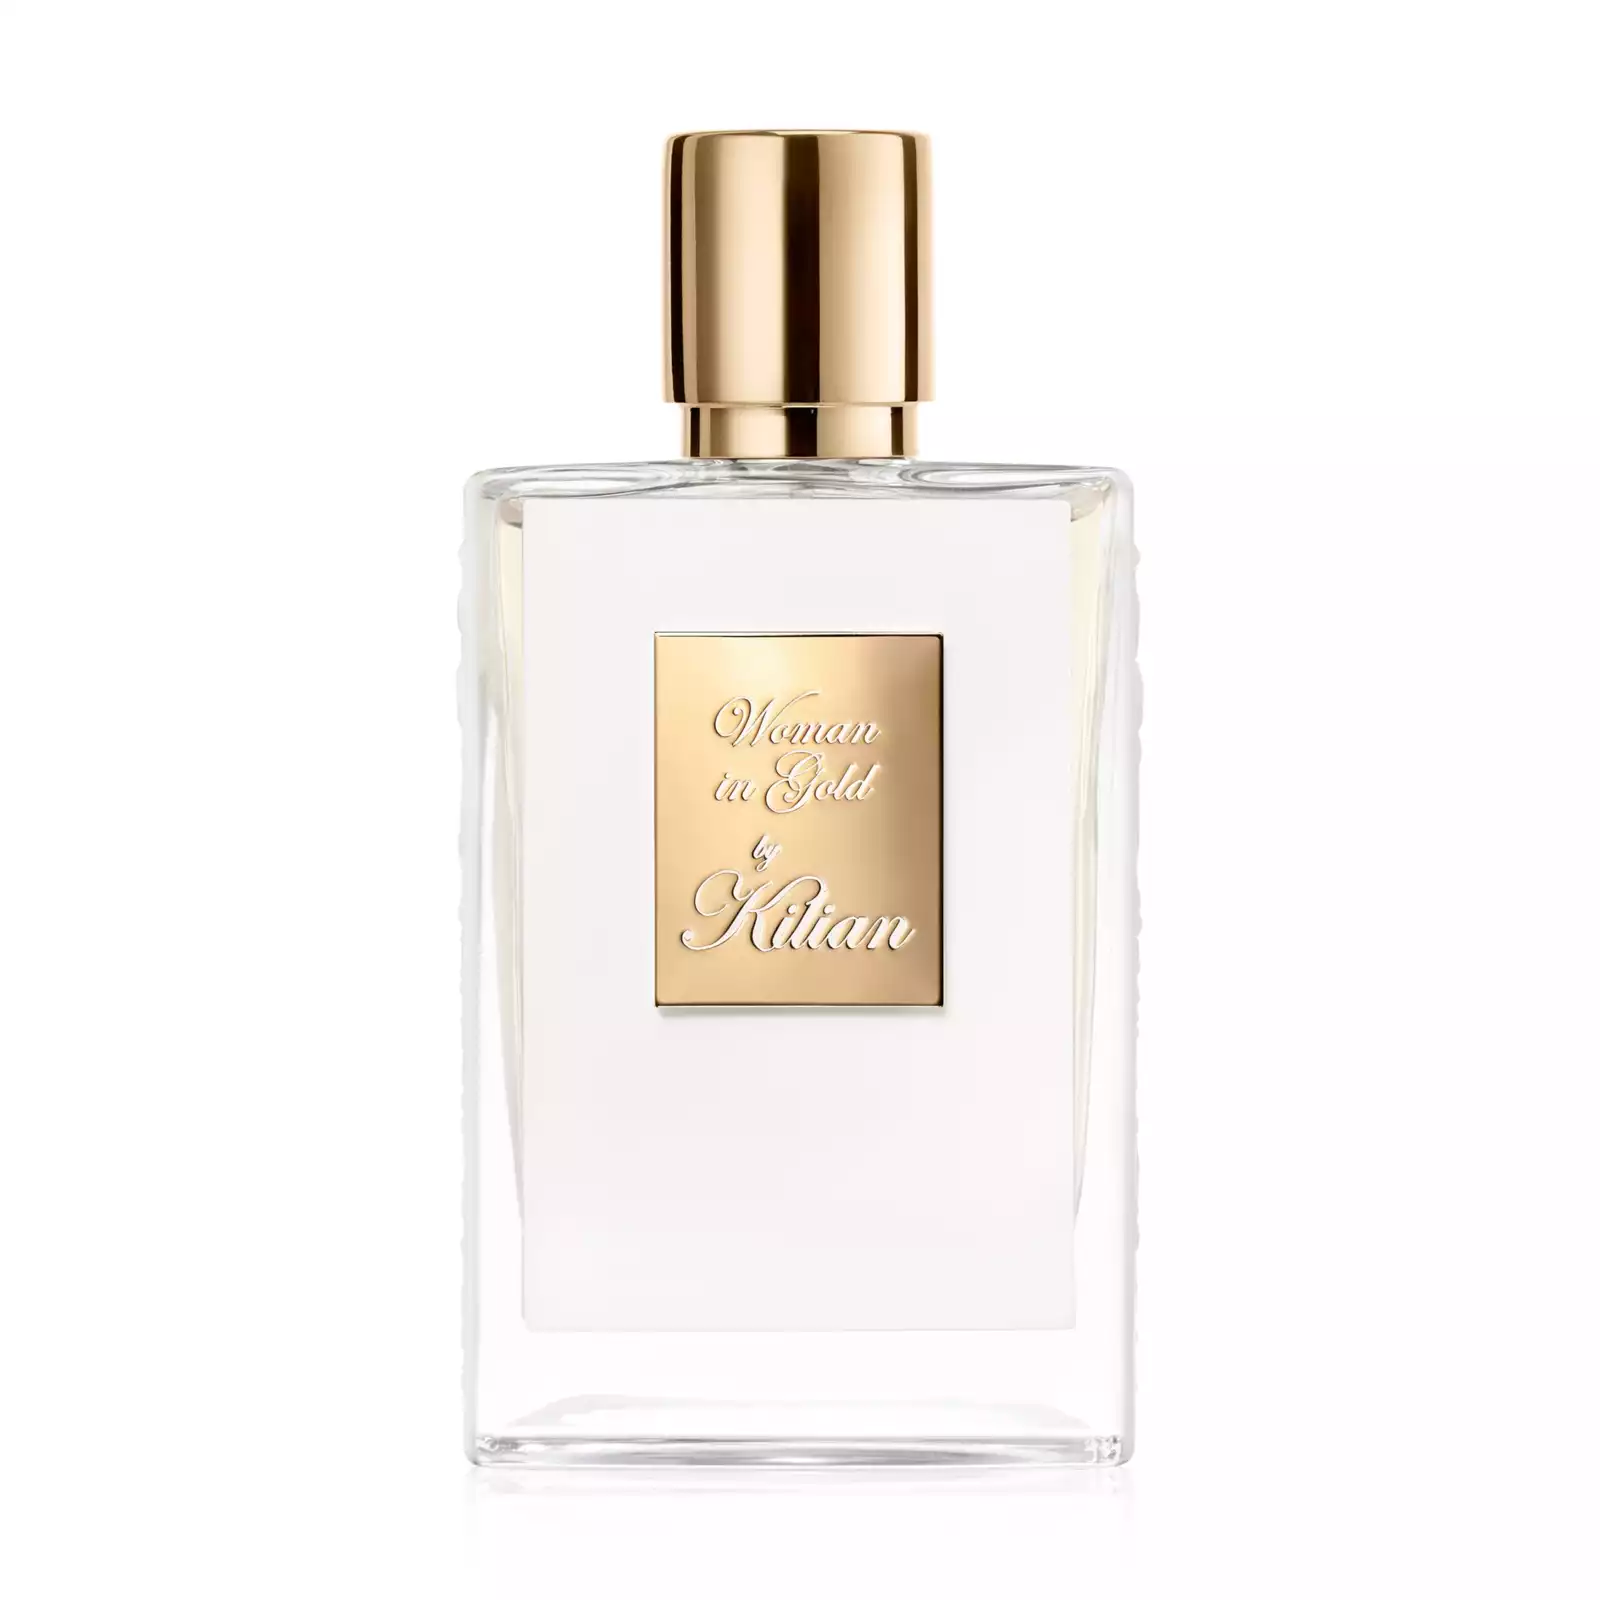 KILIAN PARIS – Woman in Gold Eau de Parfum